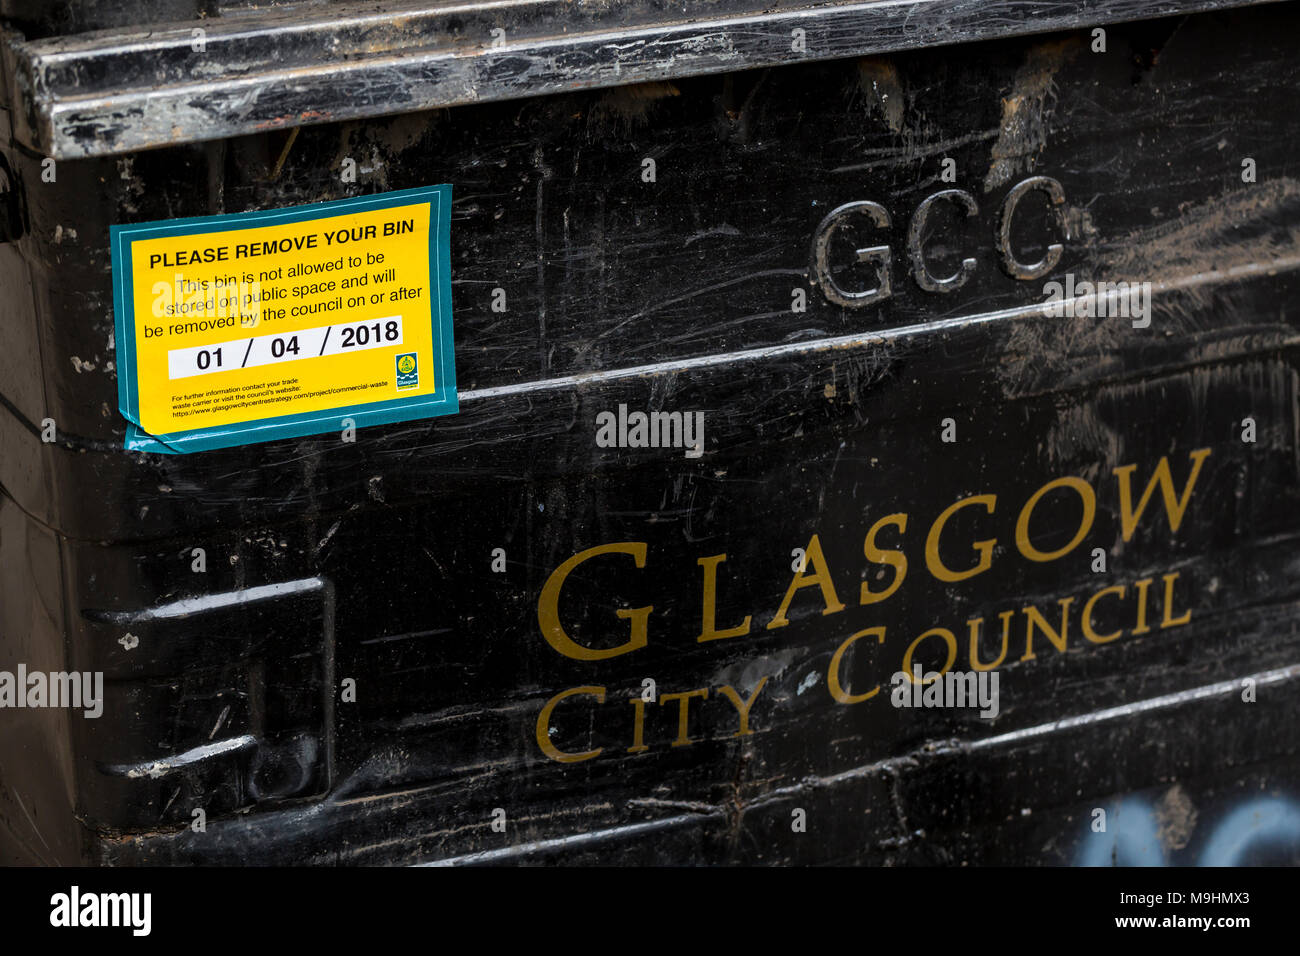 Un segno su un vassoio di commerciale avviso gli utenti deve essere rimosso da un luogo pubblico, Glasgow, Regno Unito Foto Stock